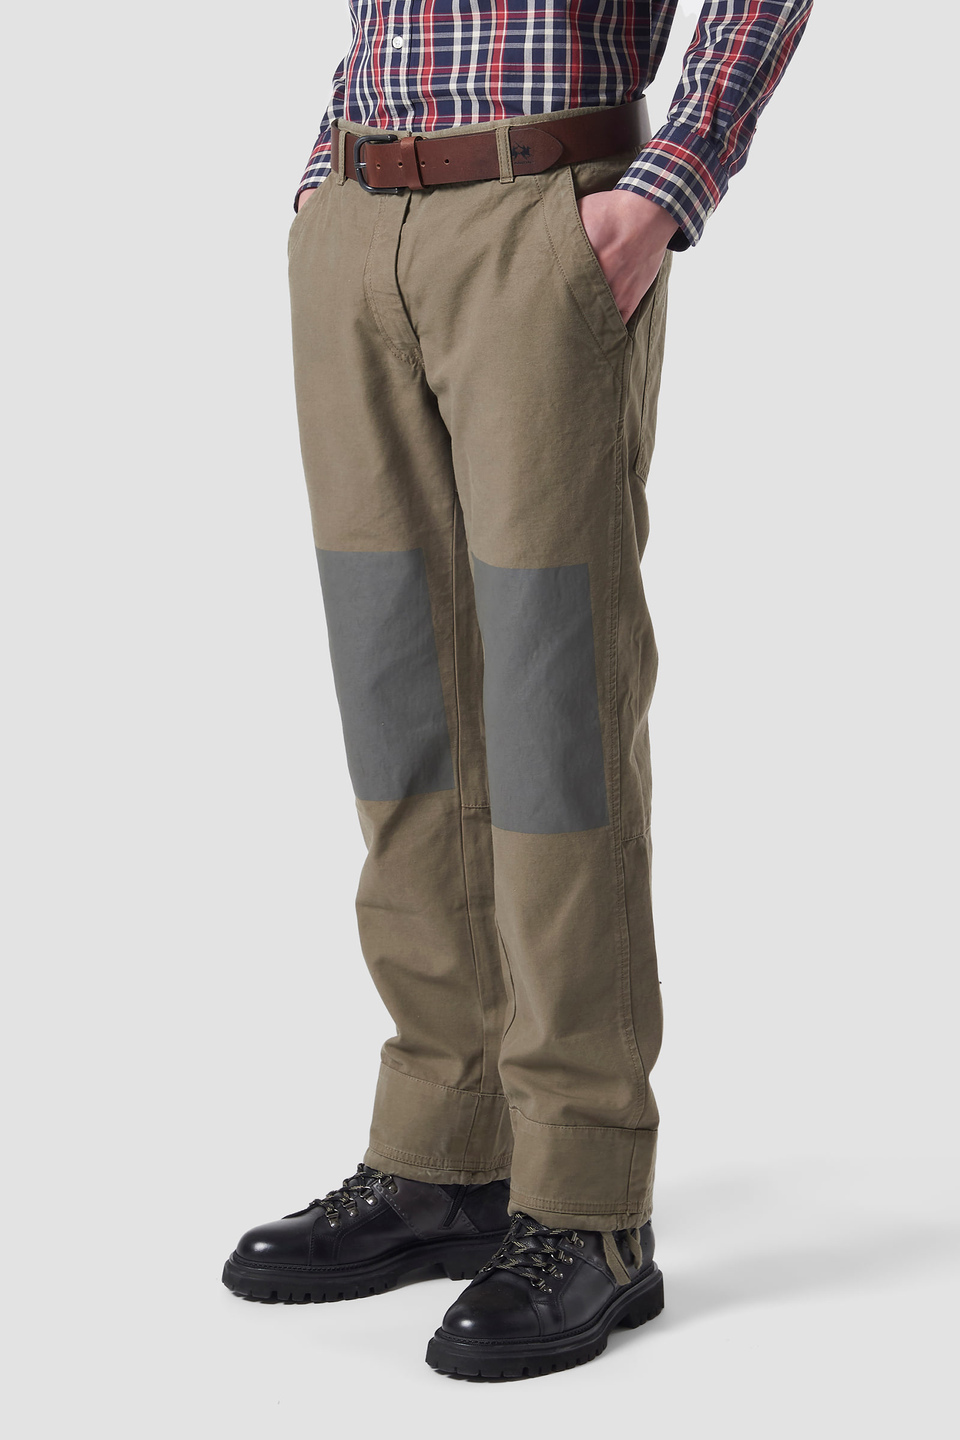 5-pocket cotton trousers | La Martina - Official Online Shop